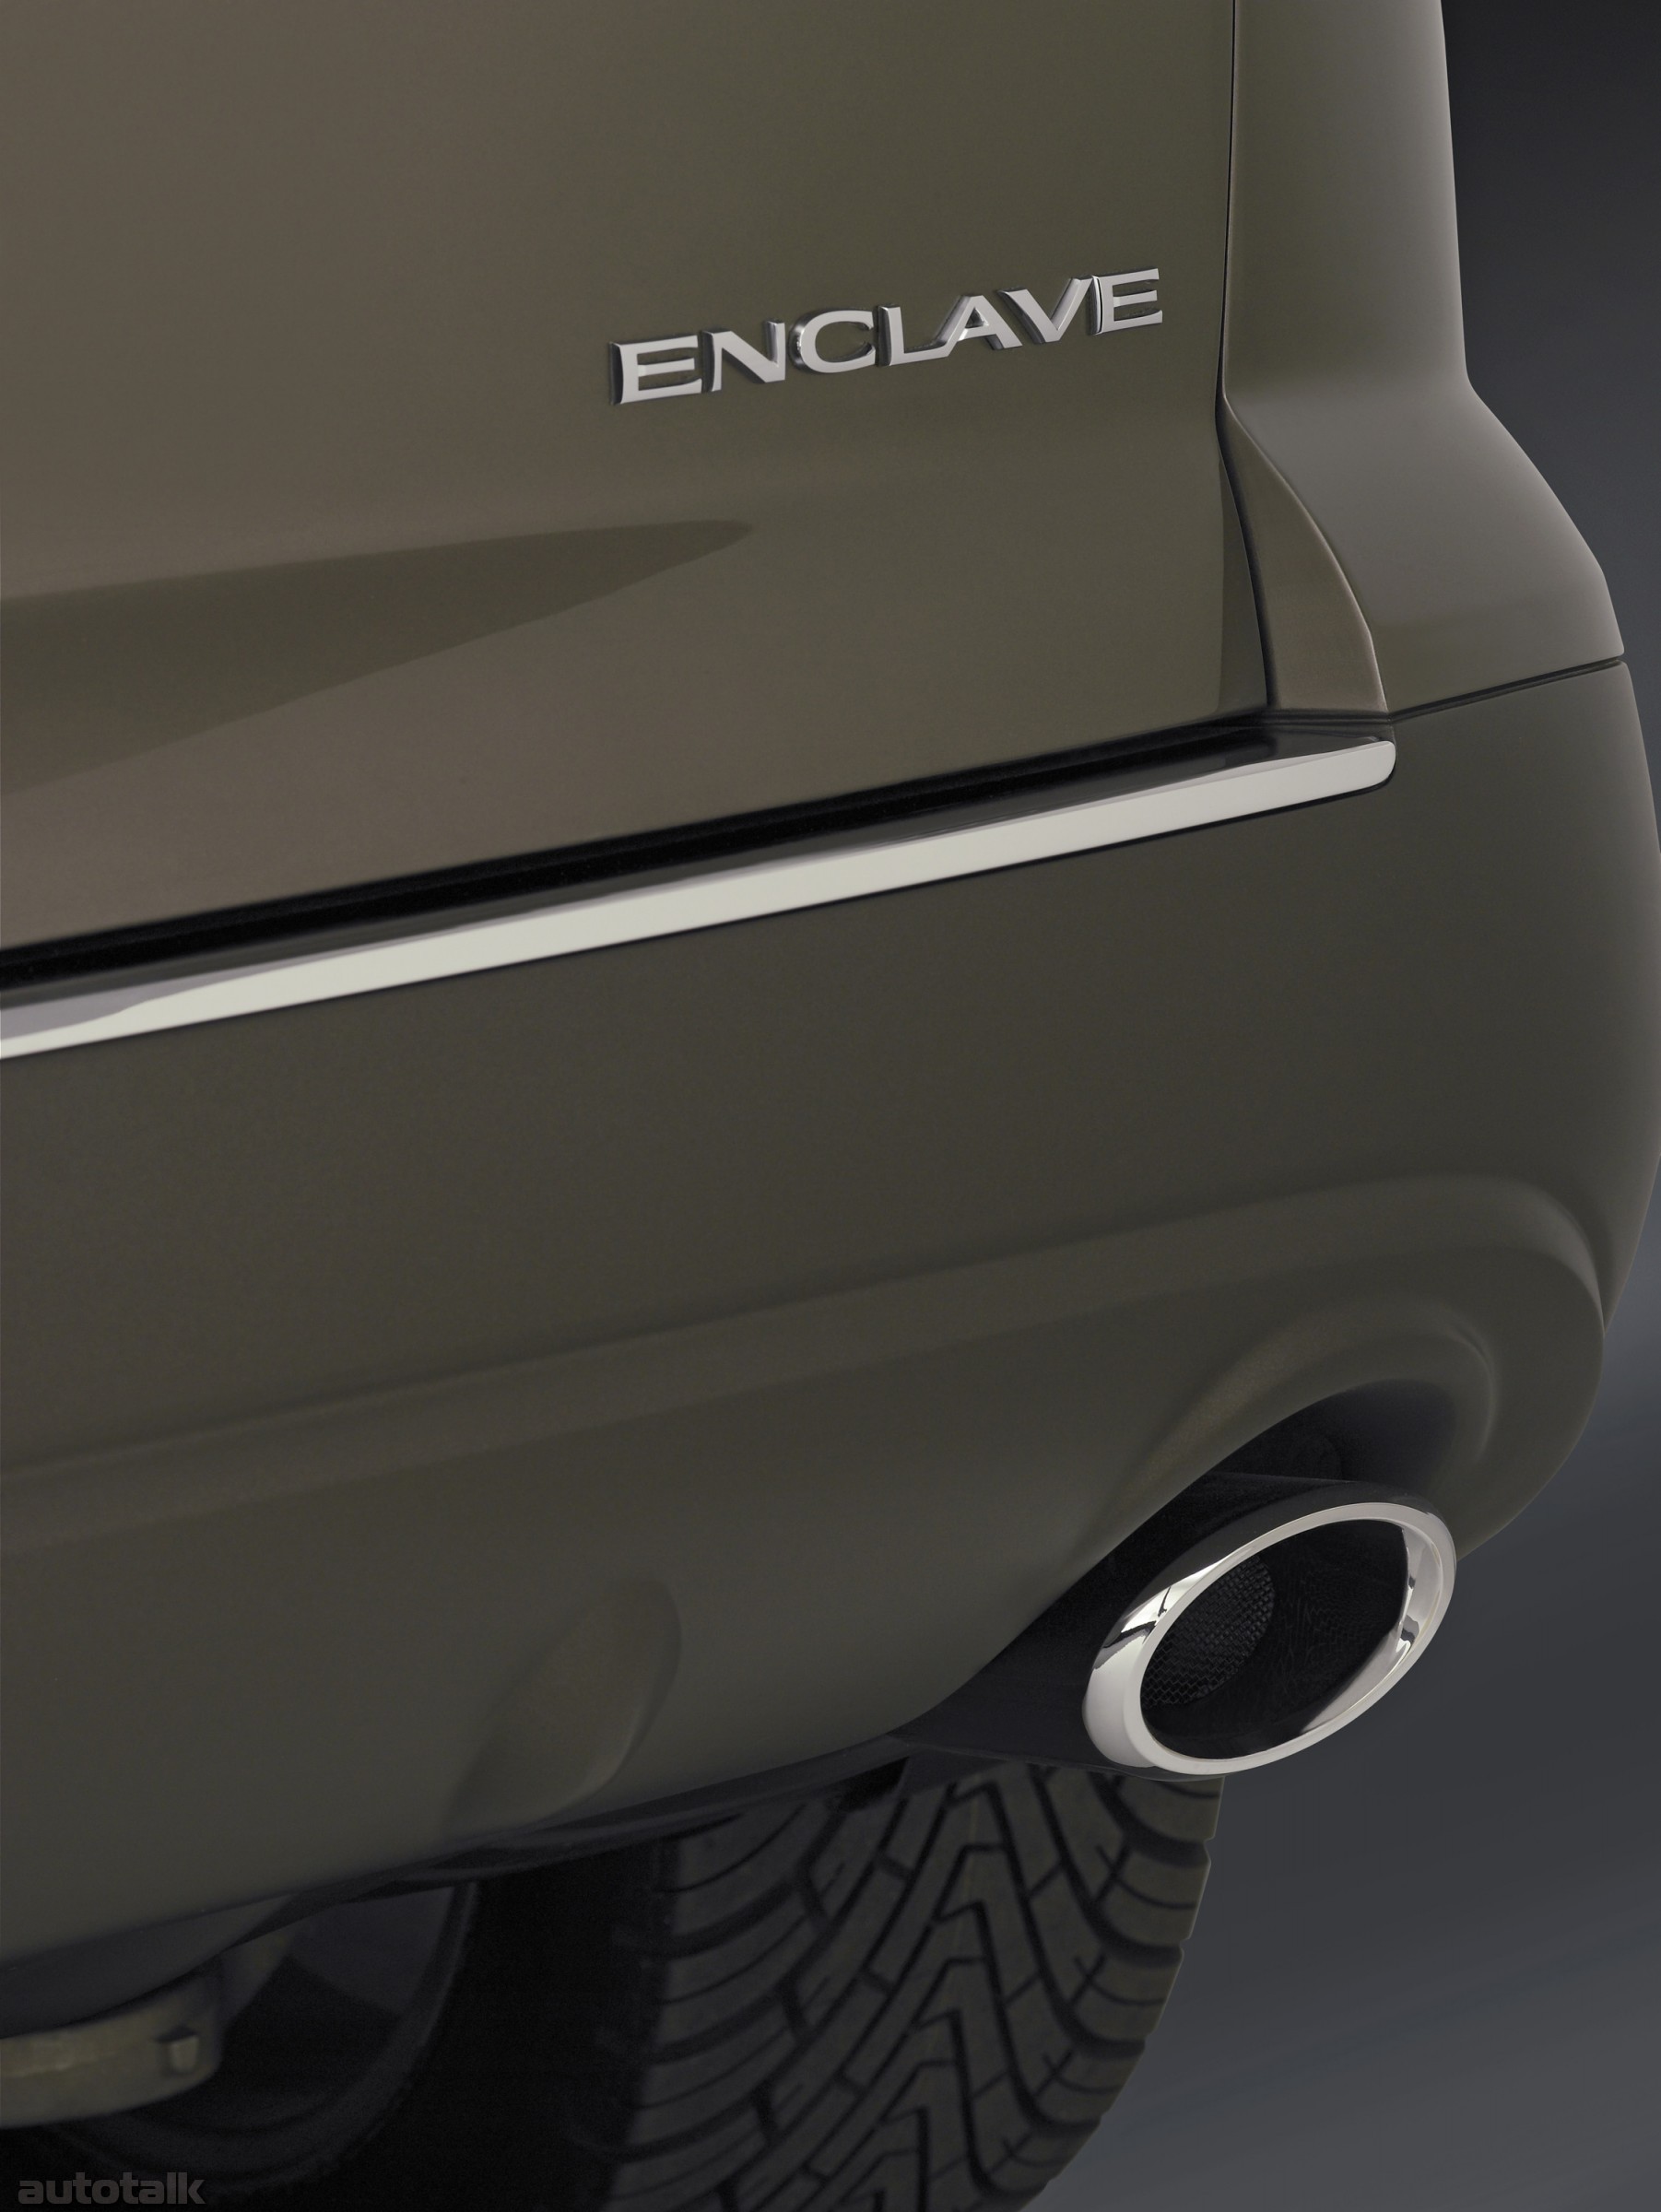 2006 Buick Enclave Concpt